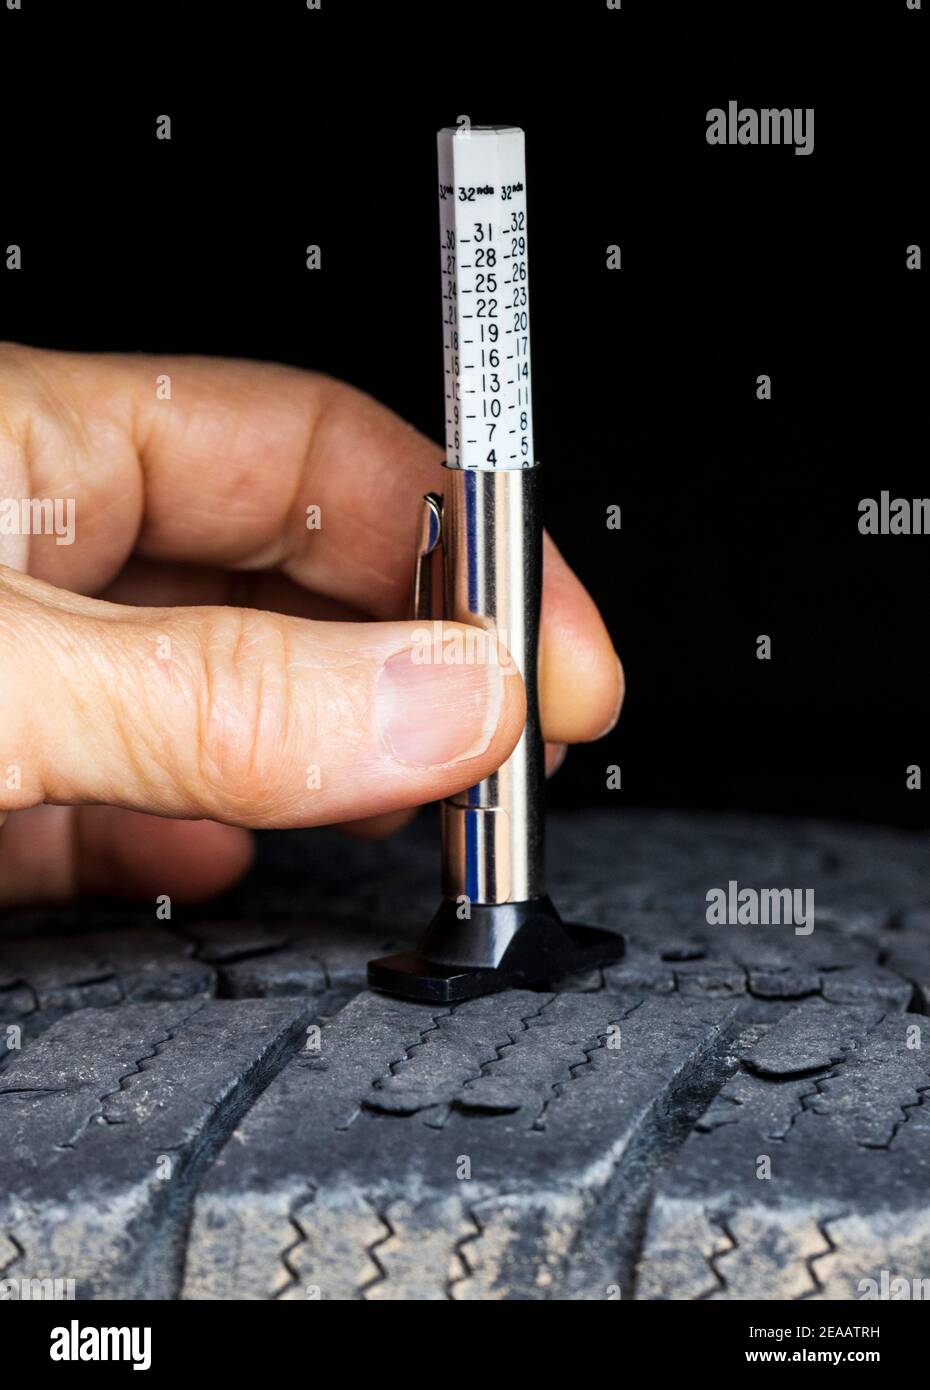 Misurazione dell'usura del battistrada degli pneumatici; tenendo a mano un calibro di profondità degli pneumatici su uno pneumatico Michelin Foto Stock